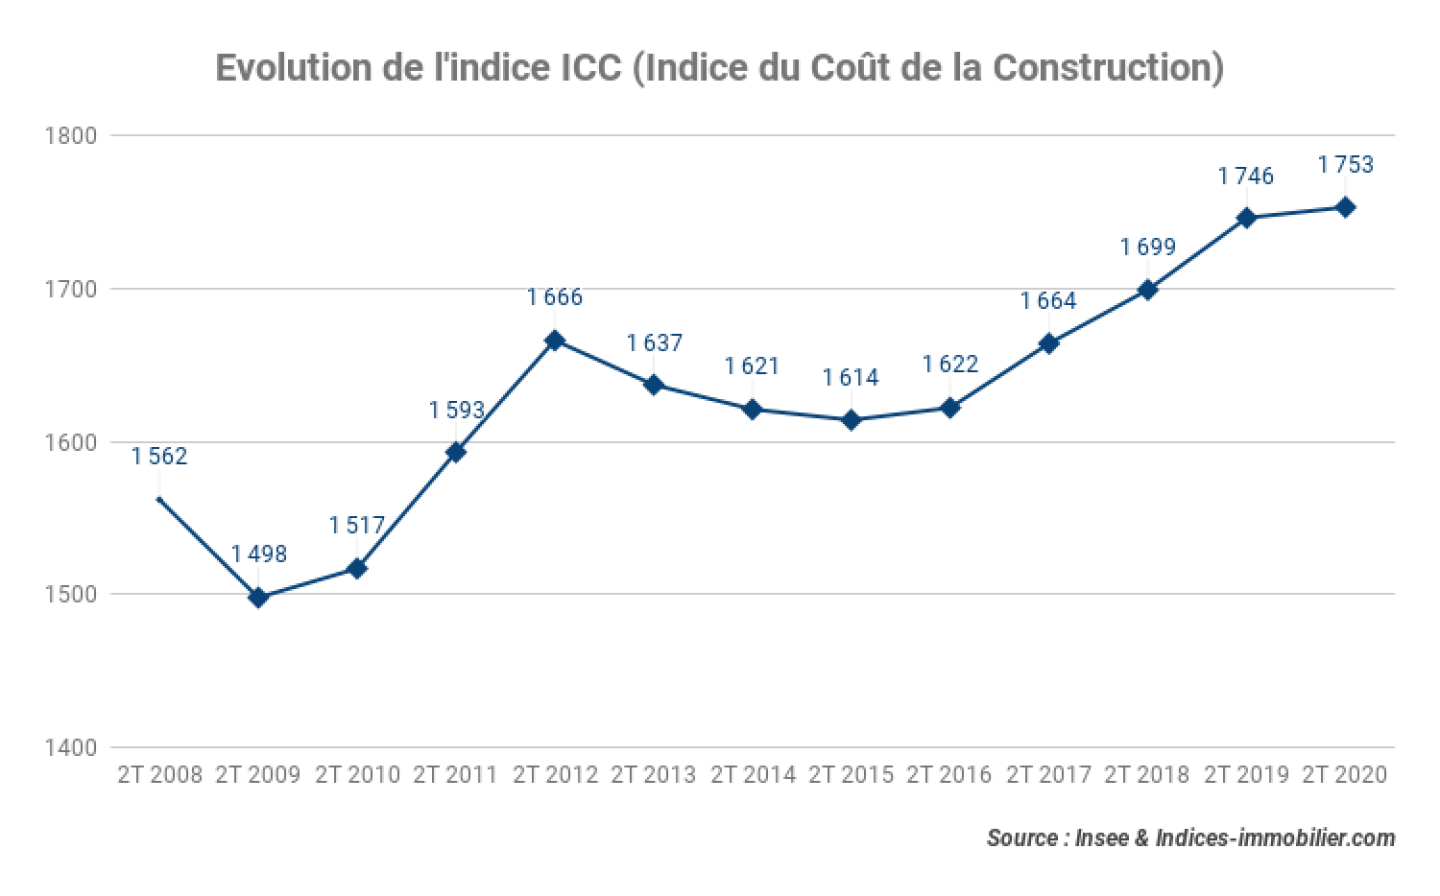 Evolution-de-lindice-ICC-Indice-du-Cout-de-la-Construction_2T-2020